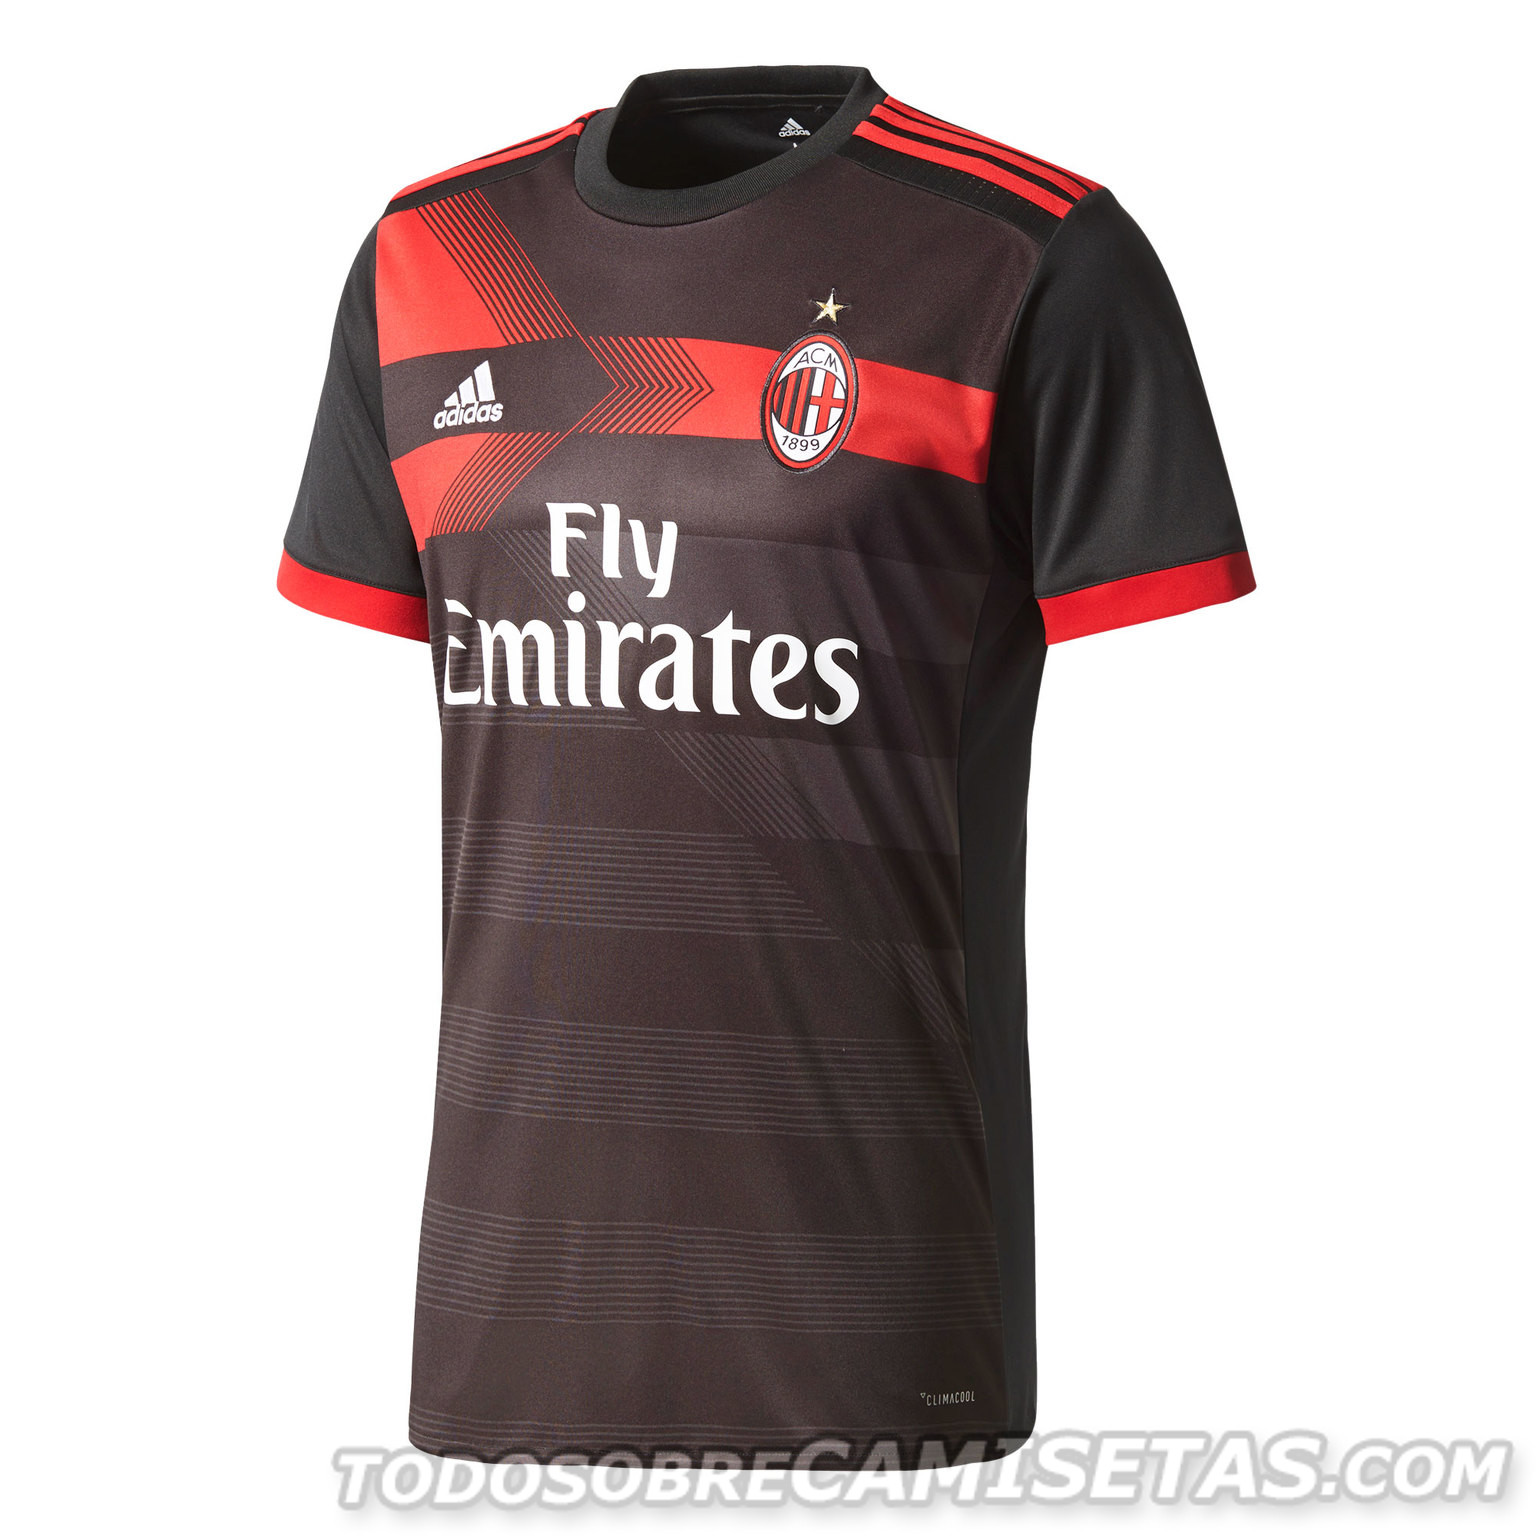 AC Milan 2017-18 adidas third kit